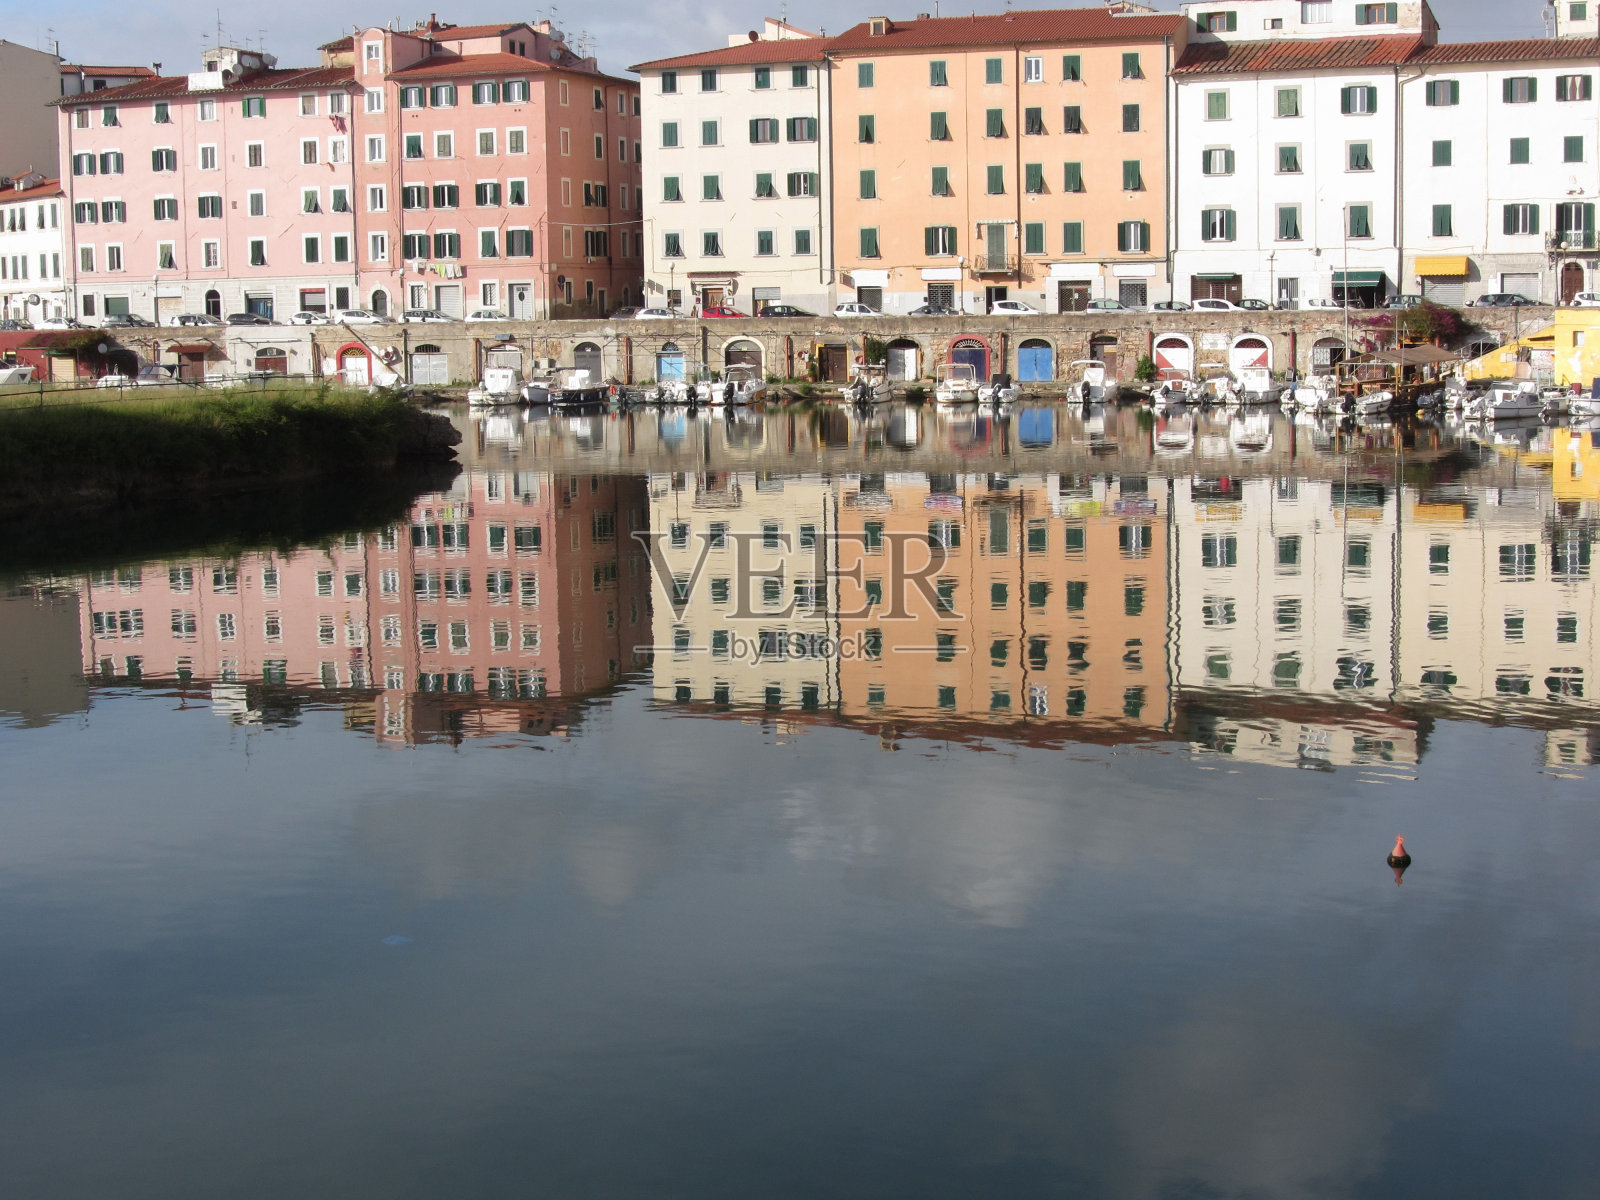 风景如画的古老住宅区附近的城市中心利沃诺。意大利托斯卡纳。房屋和船只倒映在平静的水面上照片摄影图片